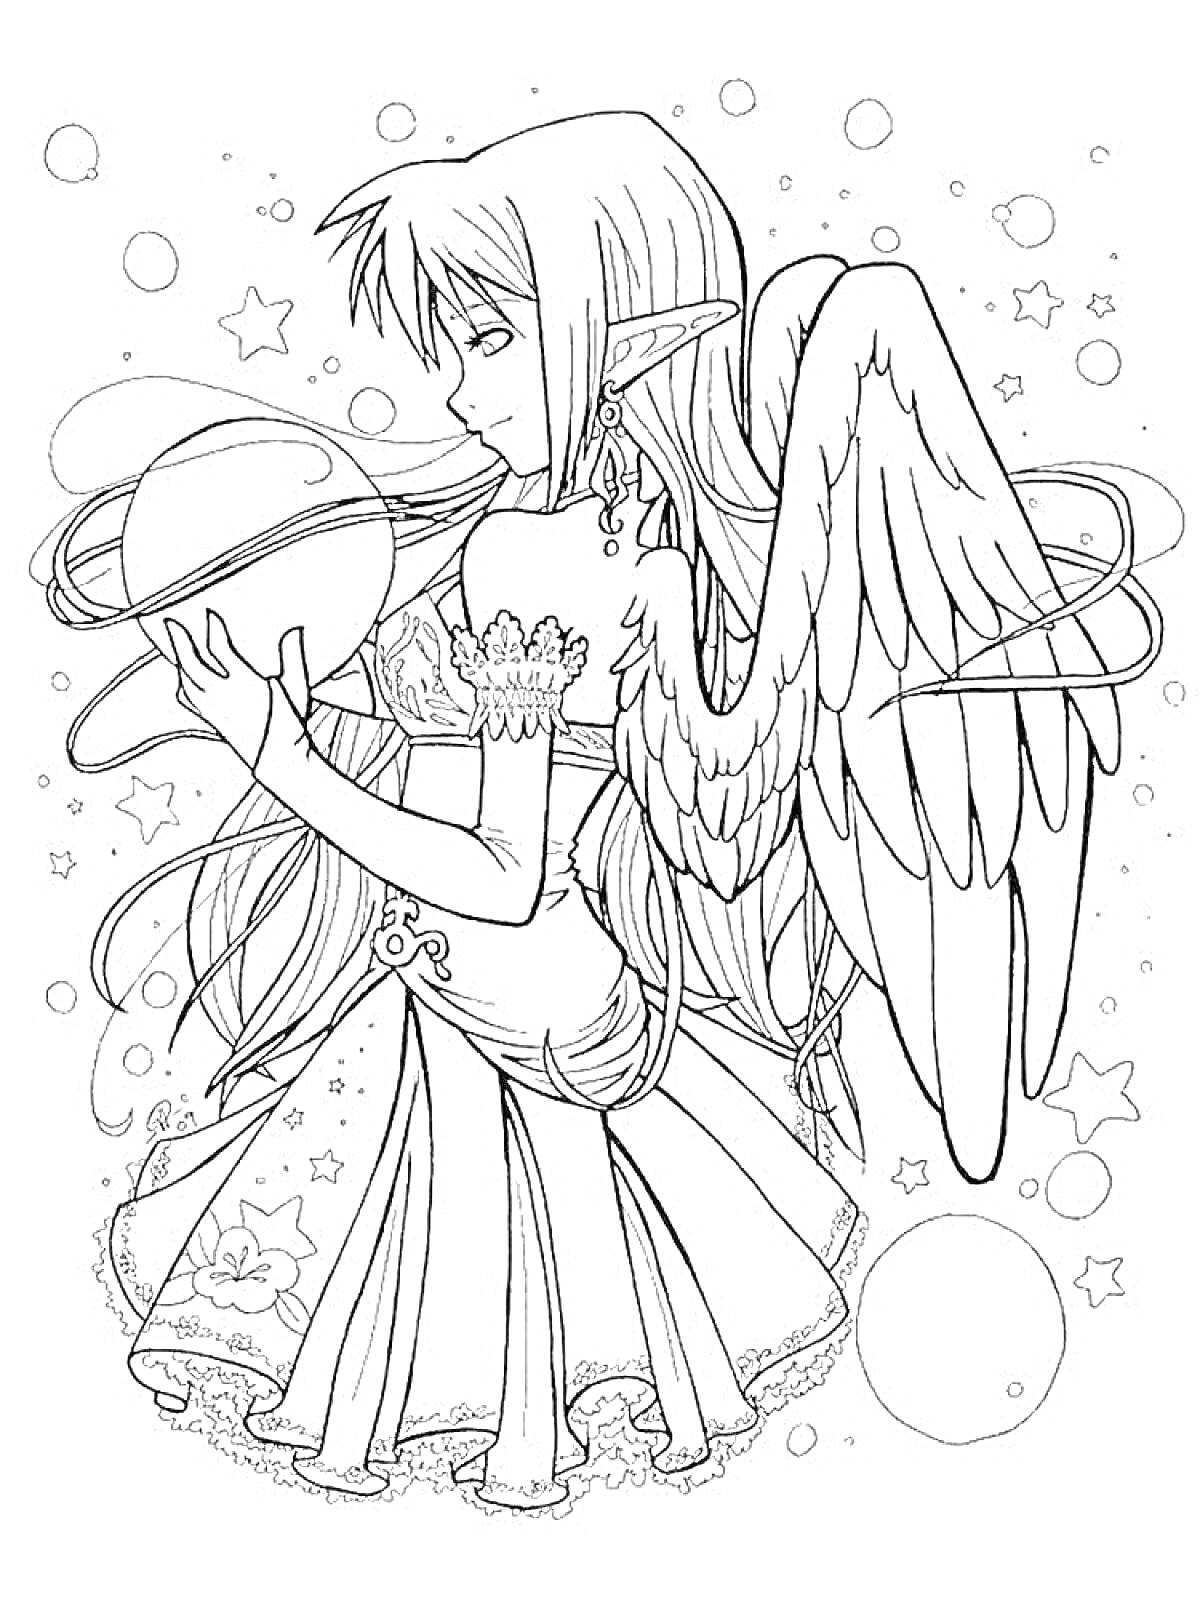 Аниме-ангел с длинными волосами, стоящий в окружении звезд и пузырей, держащий сферу кольцами